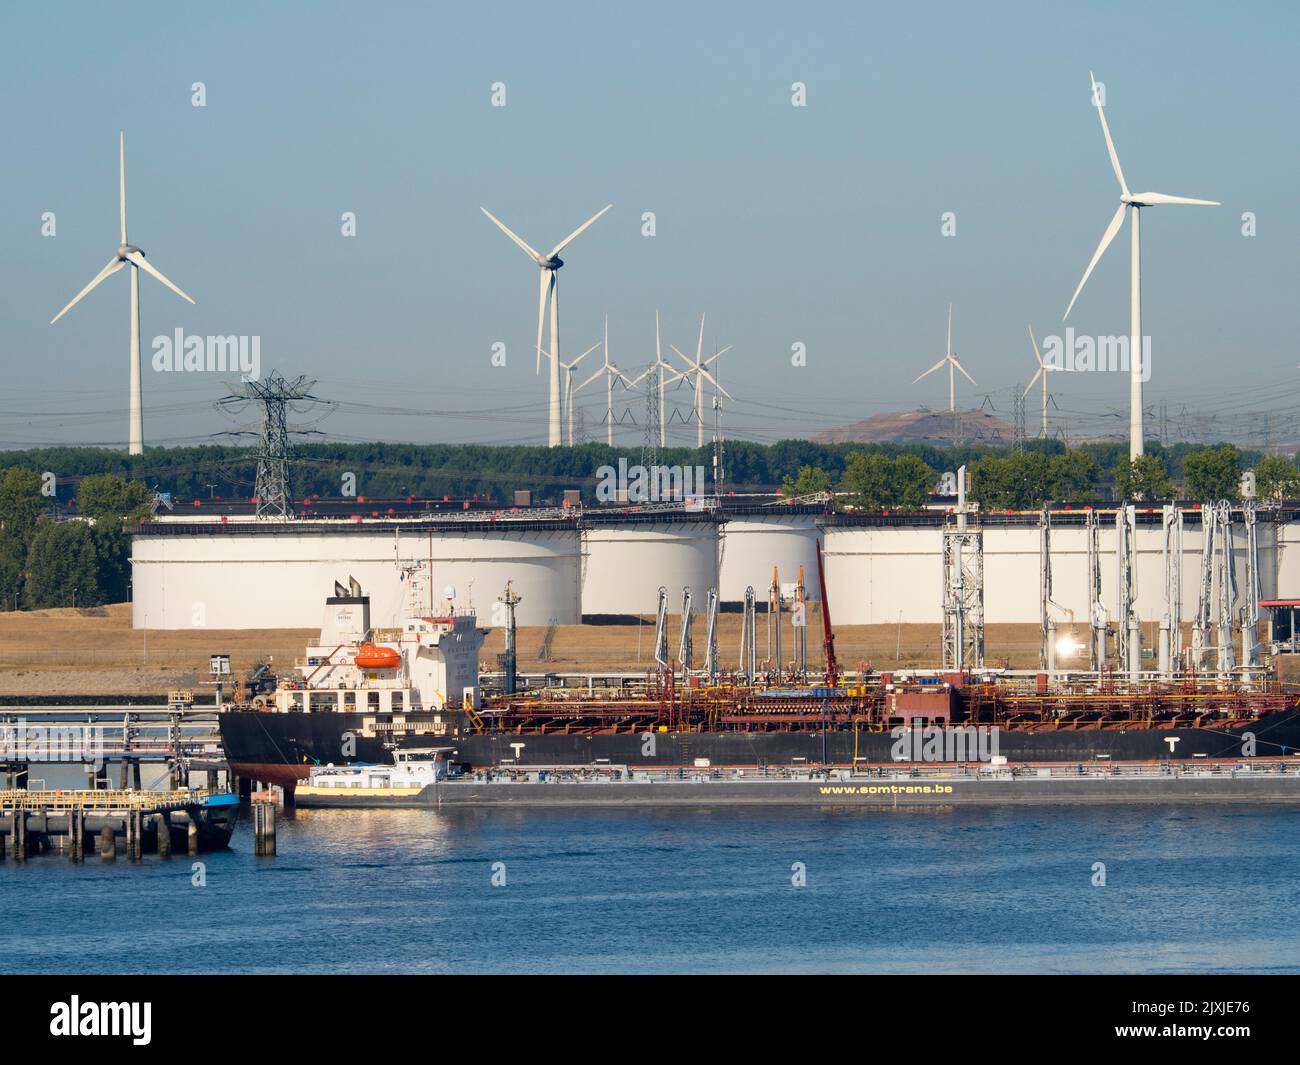 Pasado y futuro del suministro energético: Turbinas eólicas y tanques gigantescos de almacenamiento de petróleo en las afueras de Rotterdam, Países Bajos. El puerto de Rotterdam es el LA Foto de stock